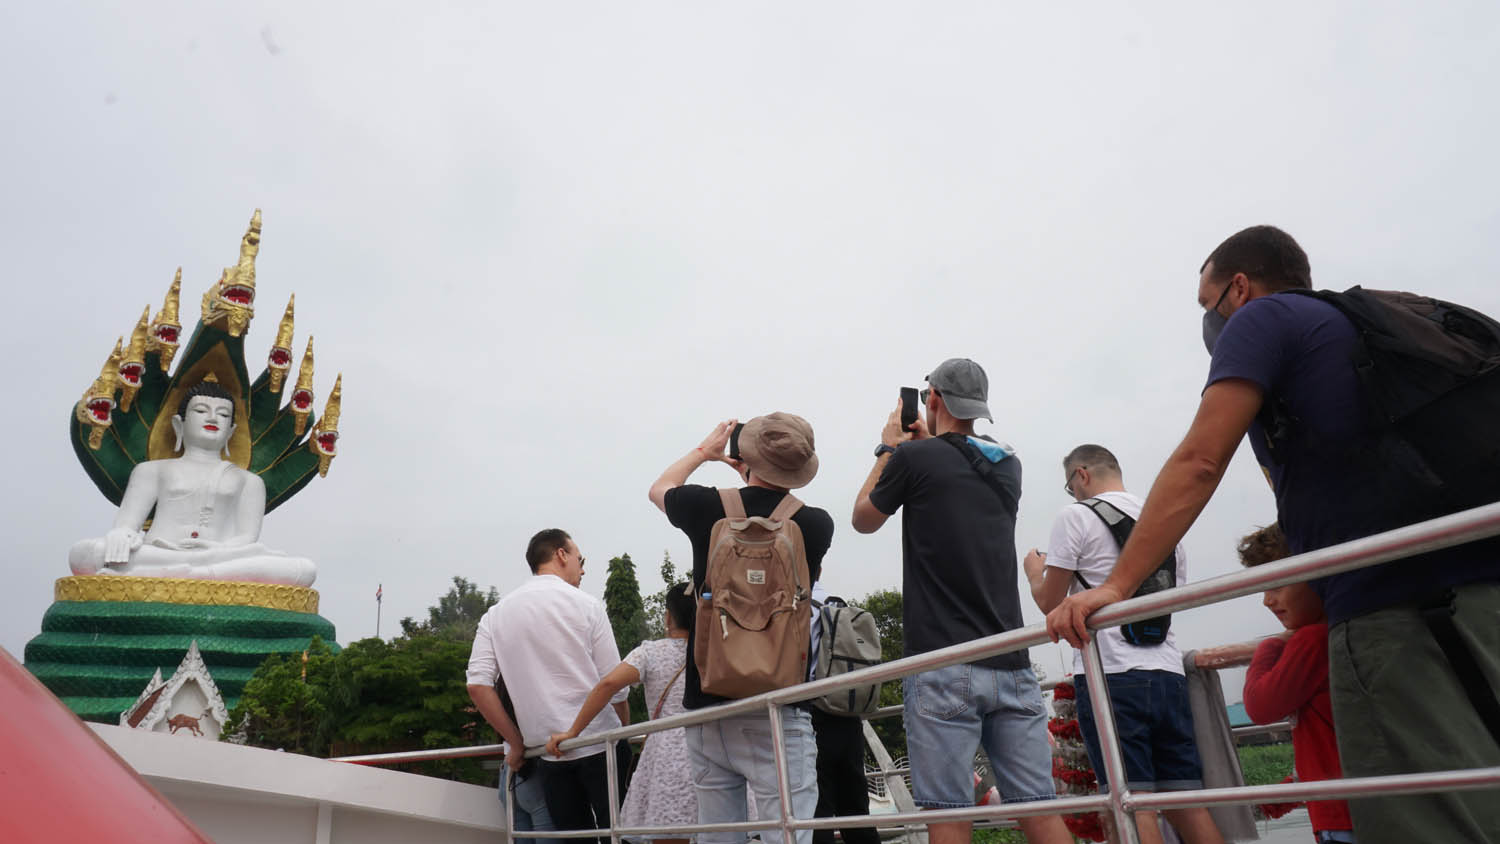 ล่องเรือด่วน เที่ยวเกาะ ไหว้พระศักดิ์สิทธิ์ กรุงเทพฯ - เกาะเกร็ด